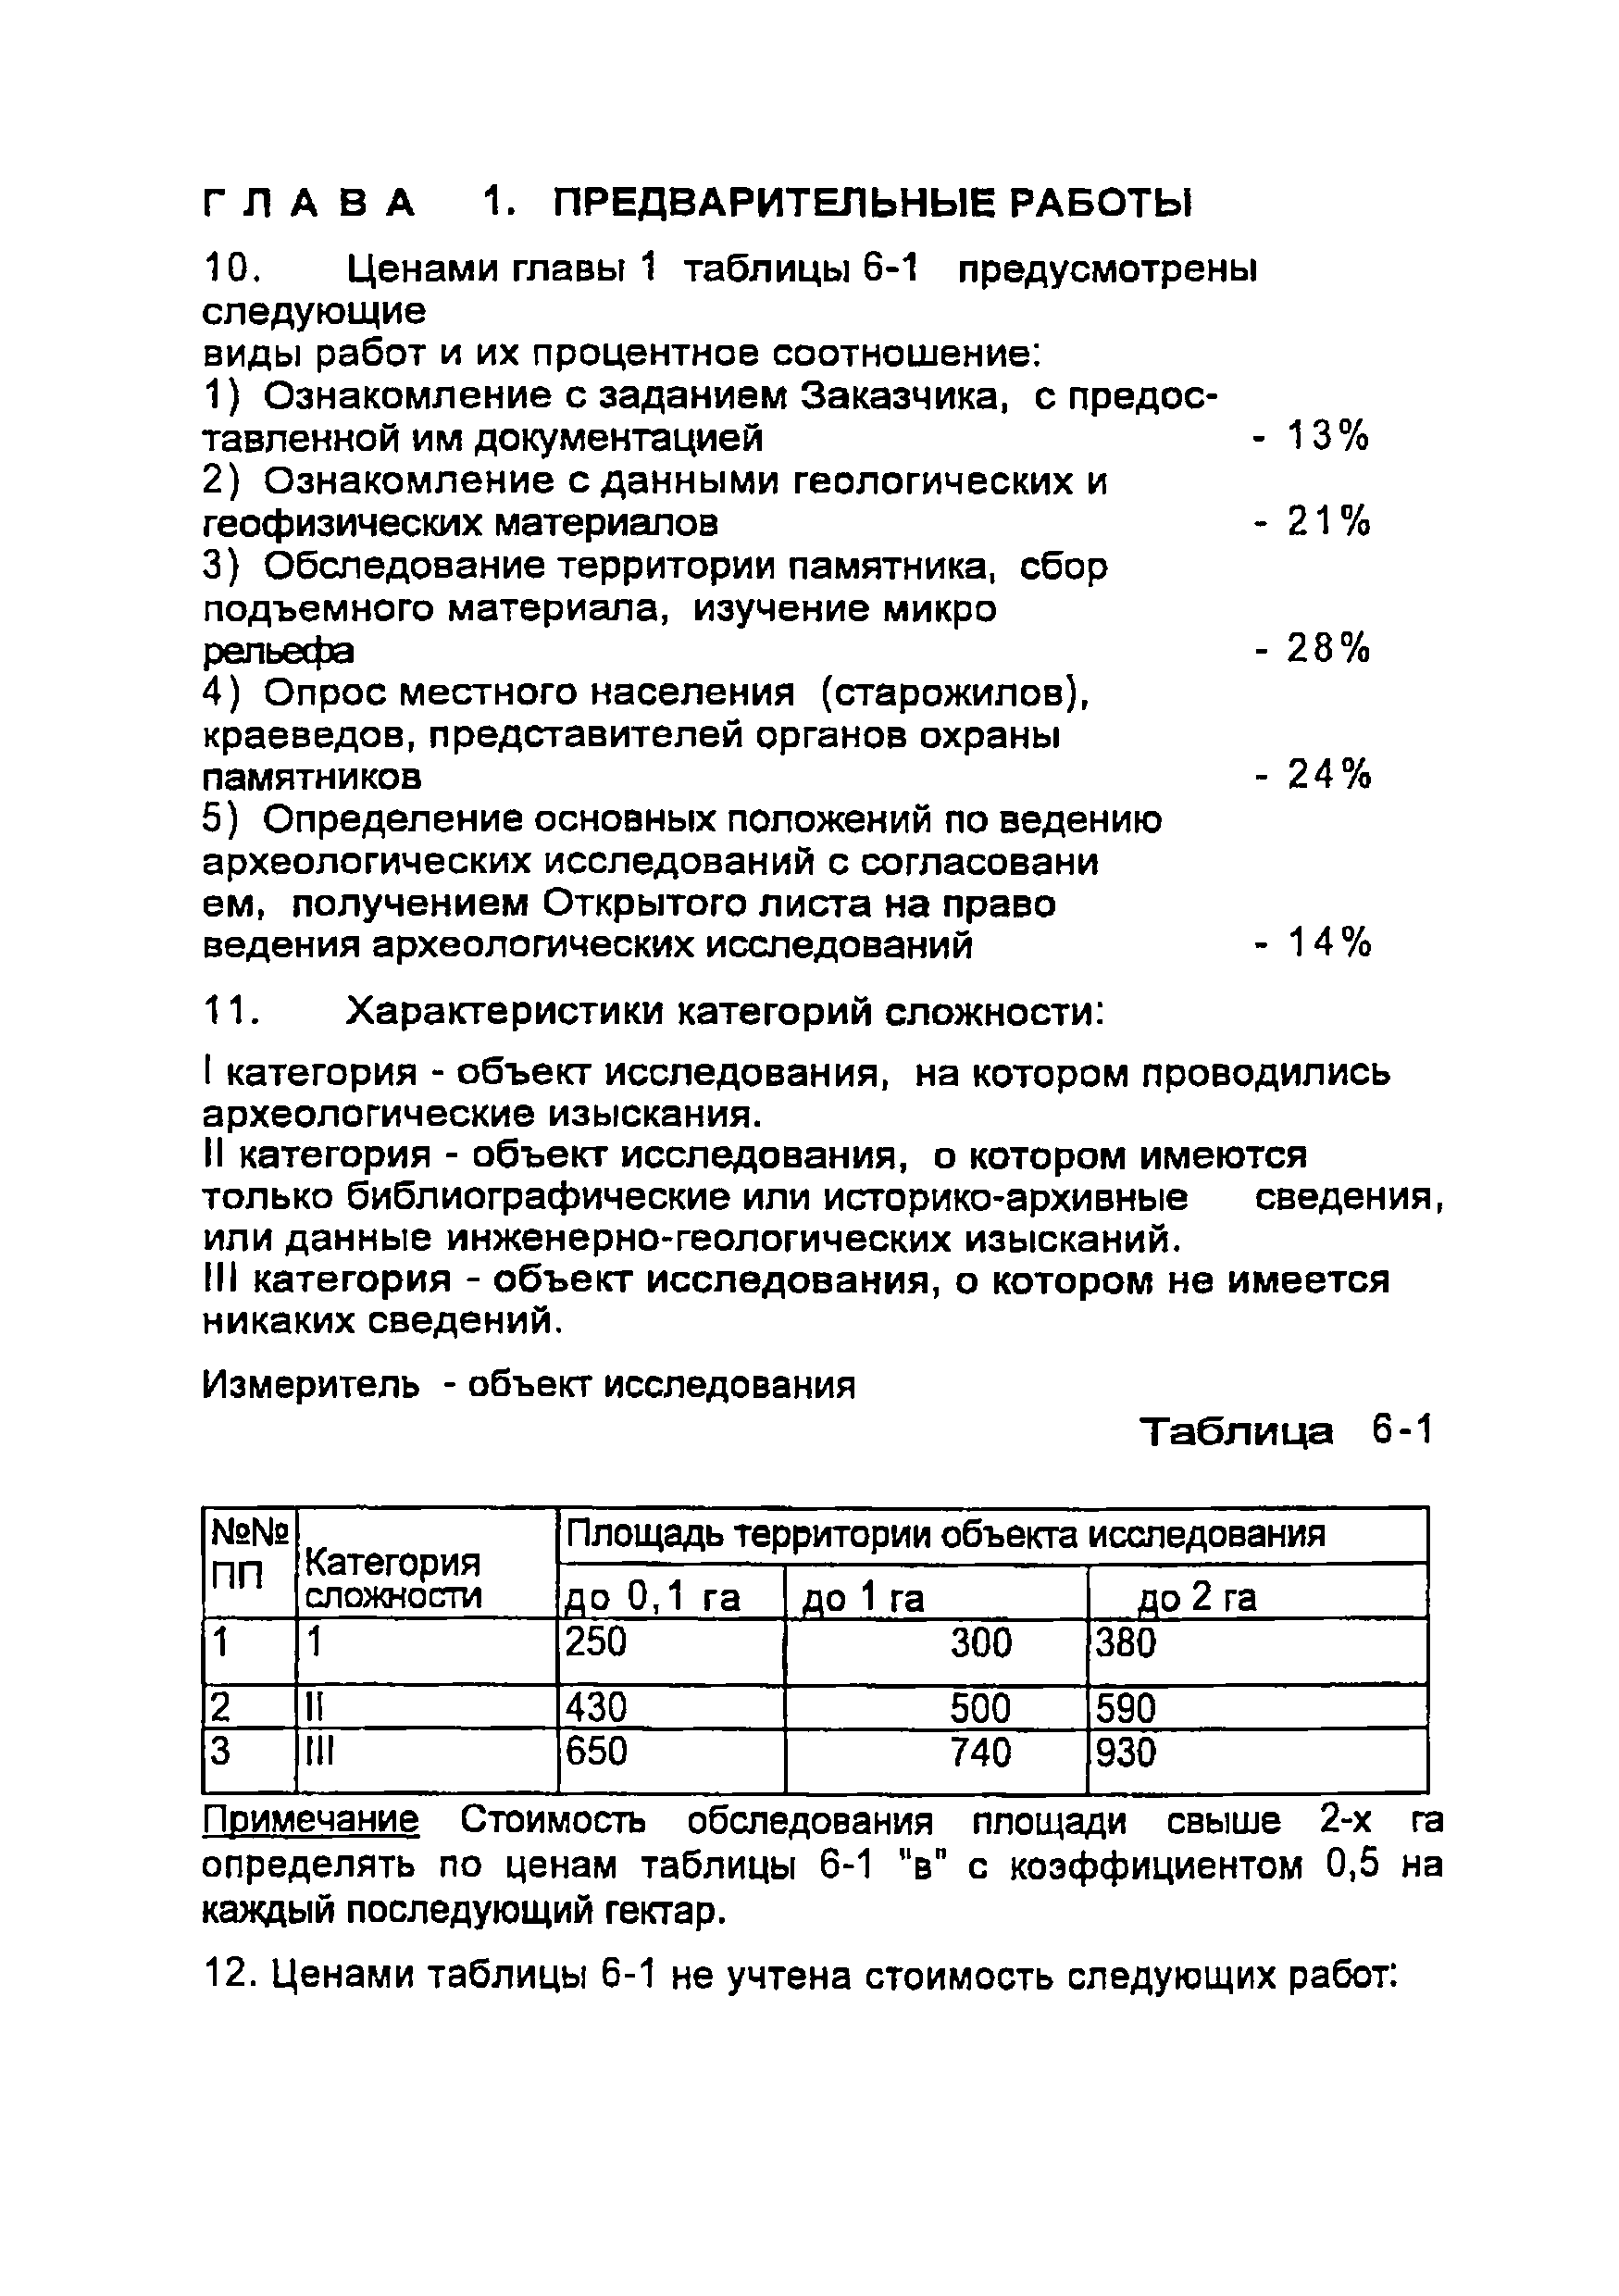 СЦНПР 91-6